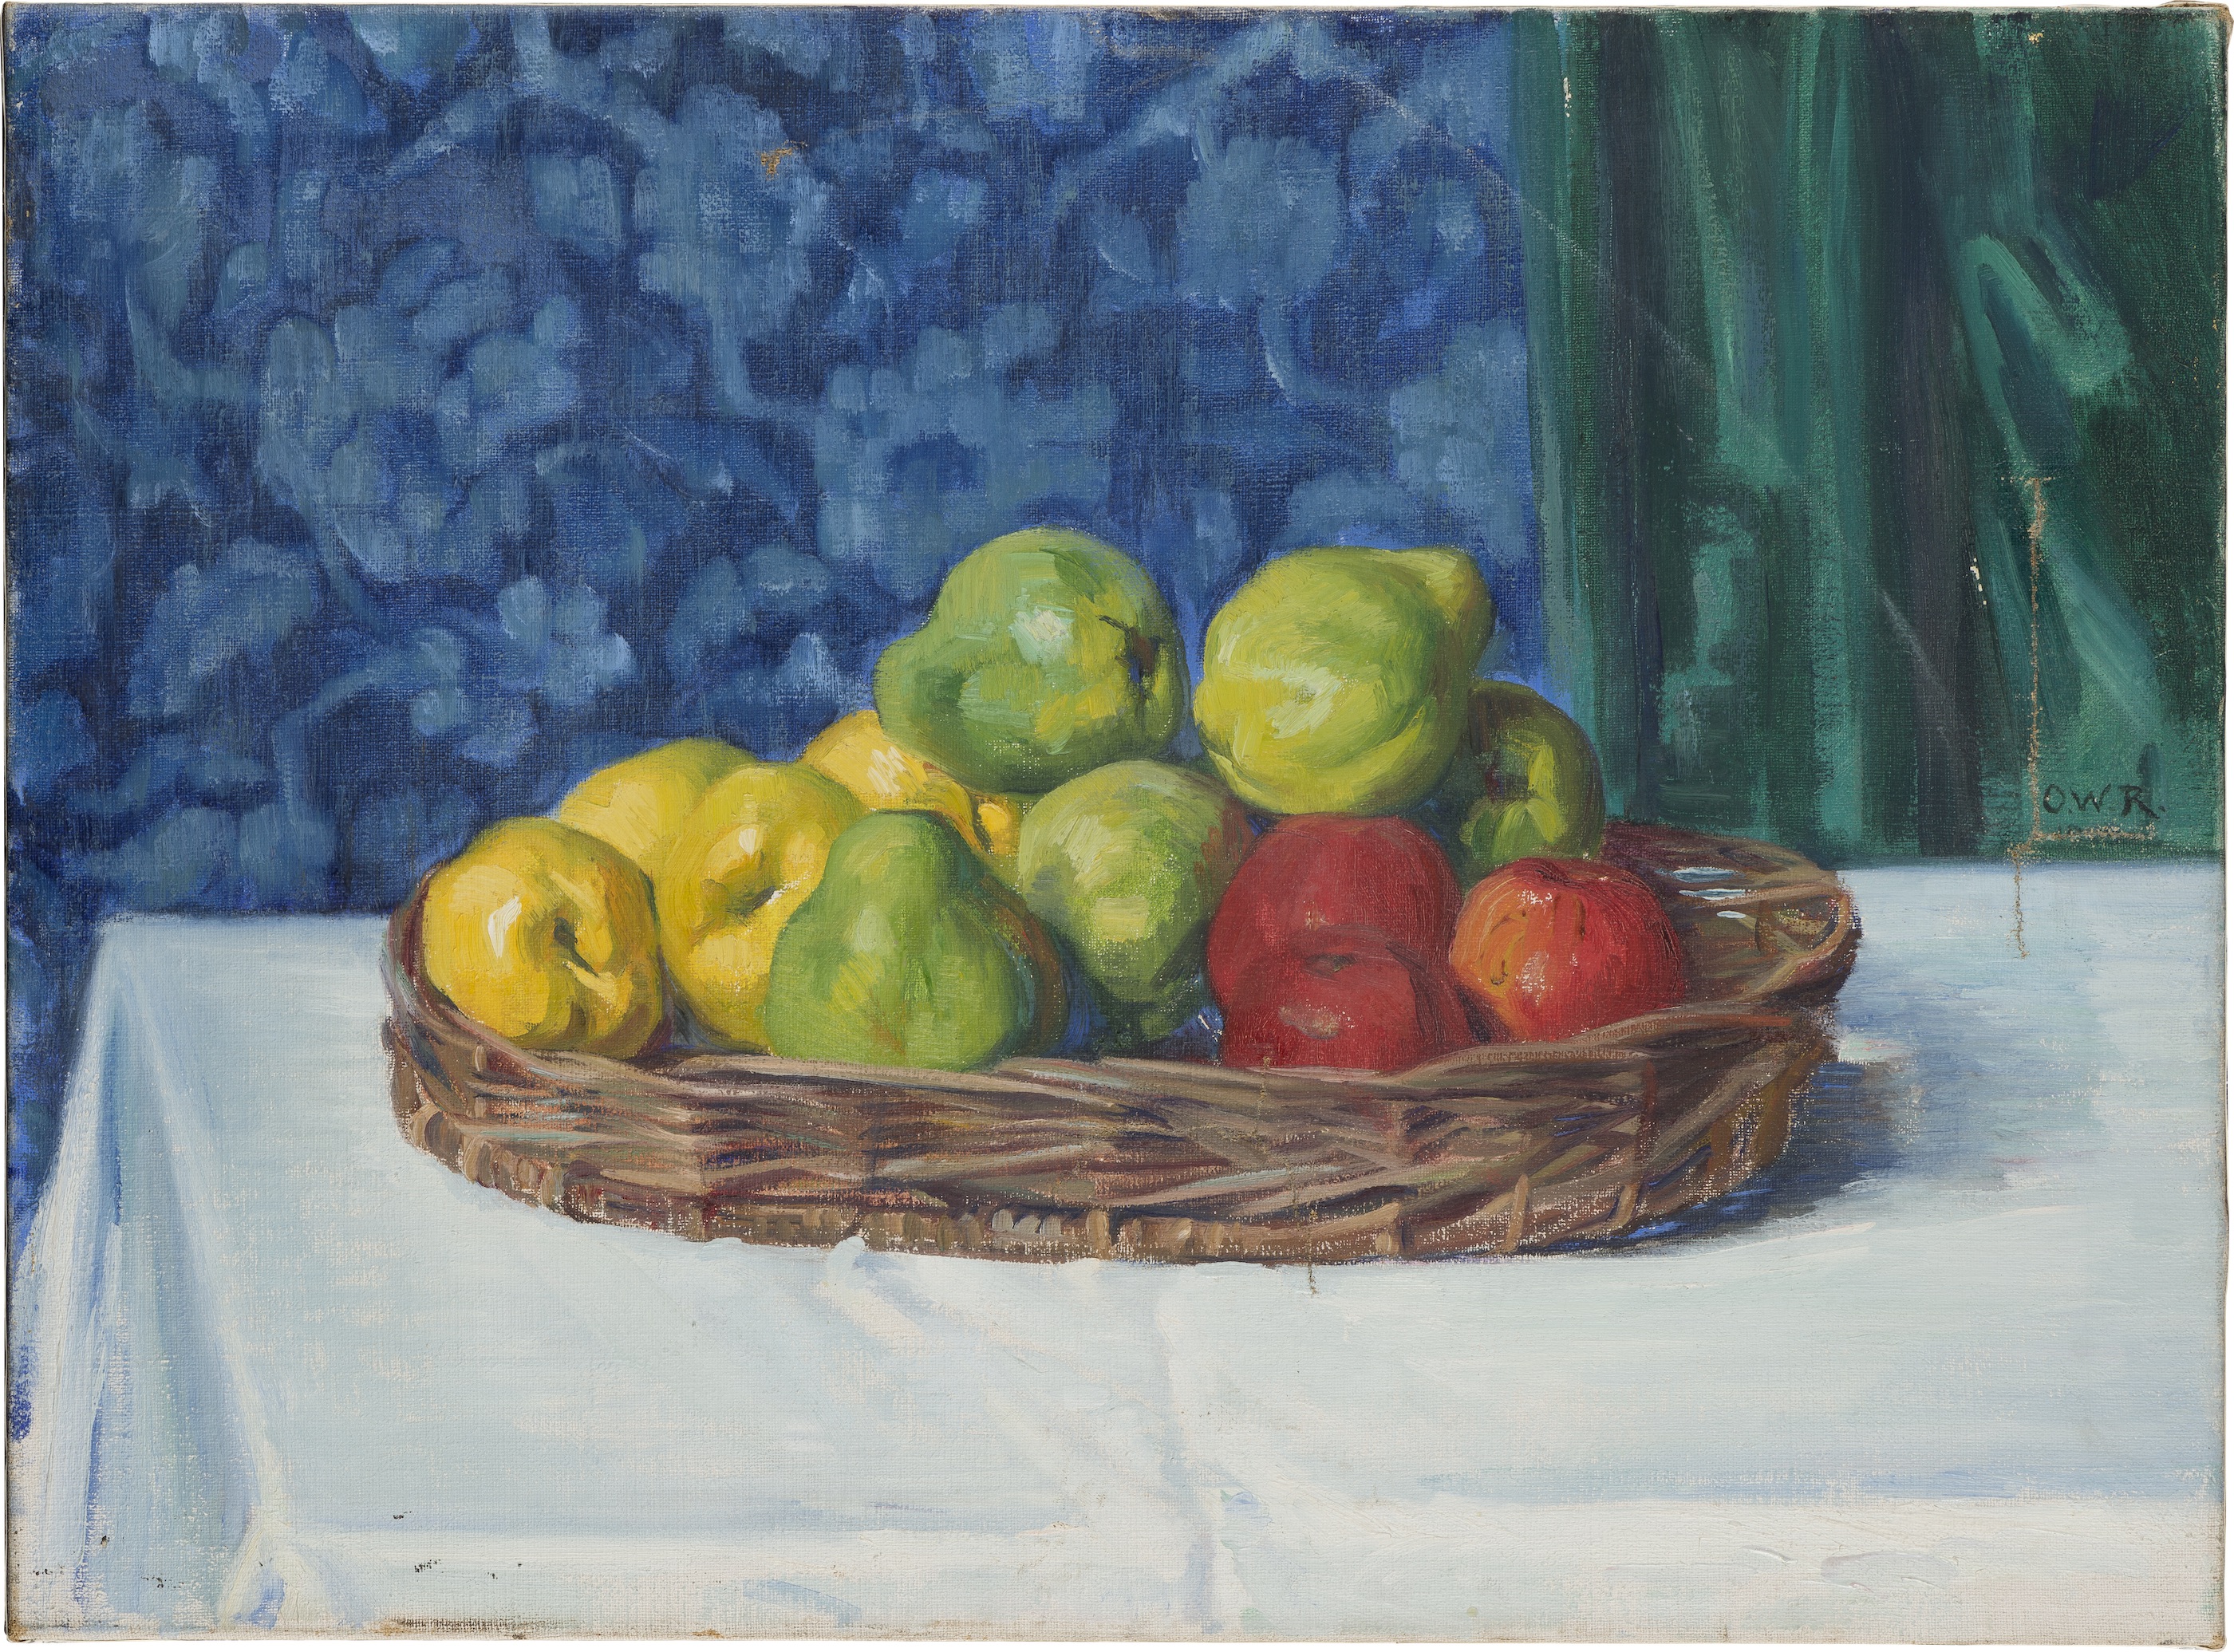 Natura moartă: coș cu fructe pe masă by Ottilie W. Roederstein - 1909 - 58.6 x 79 cm 